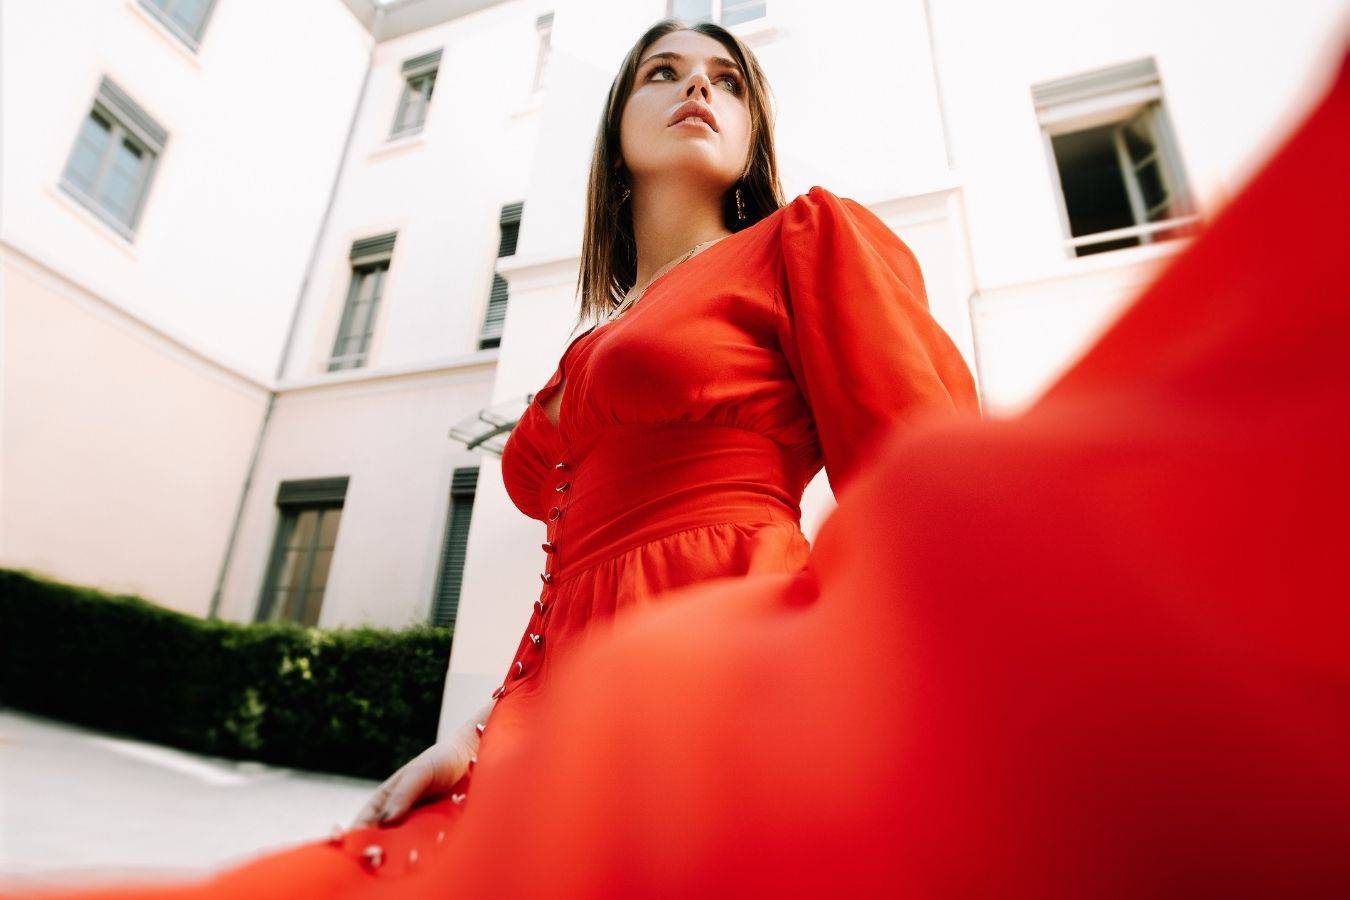  تفسير حلم الفستان الأحمر للعزباء 